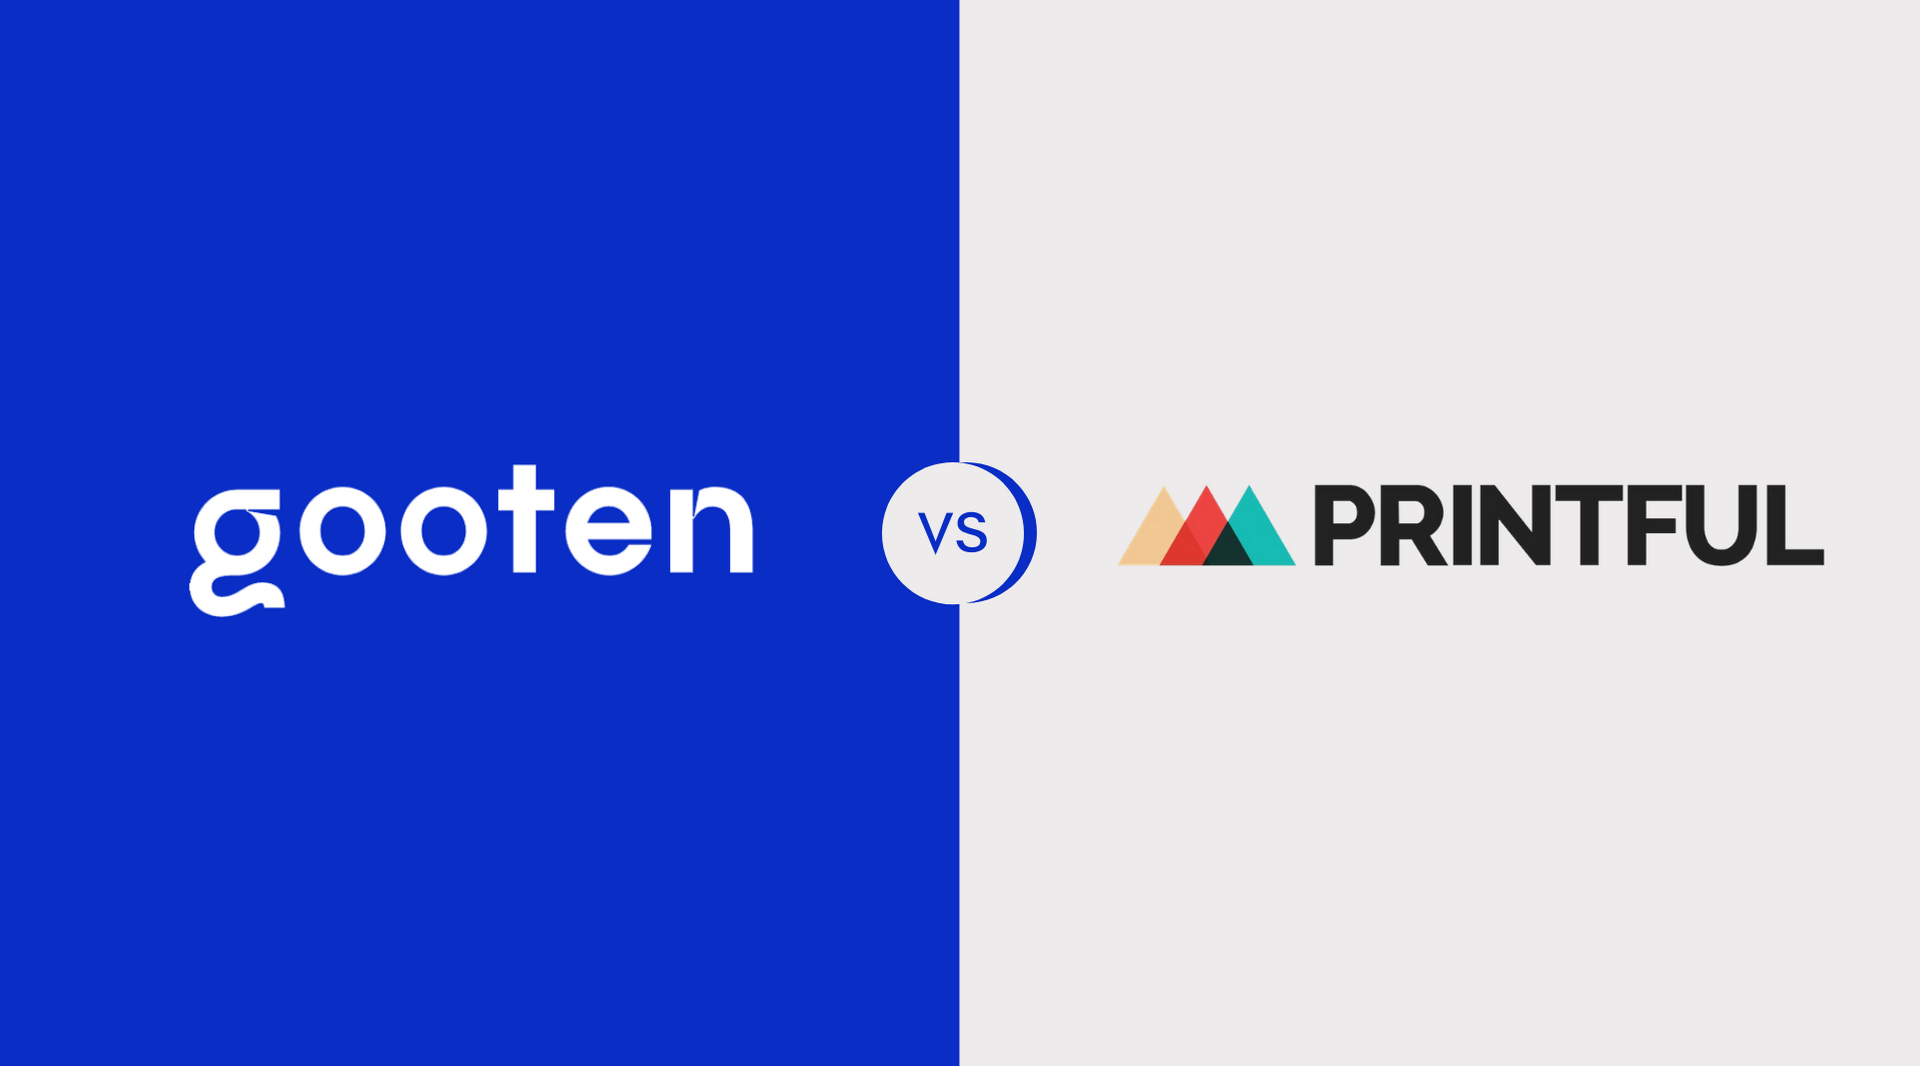 gooten vs printful